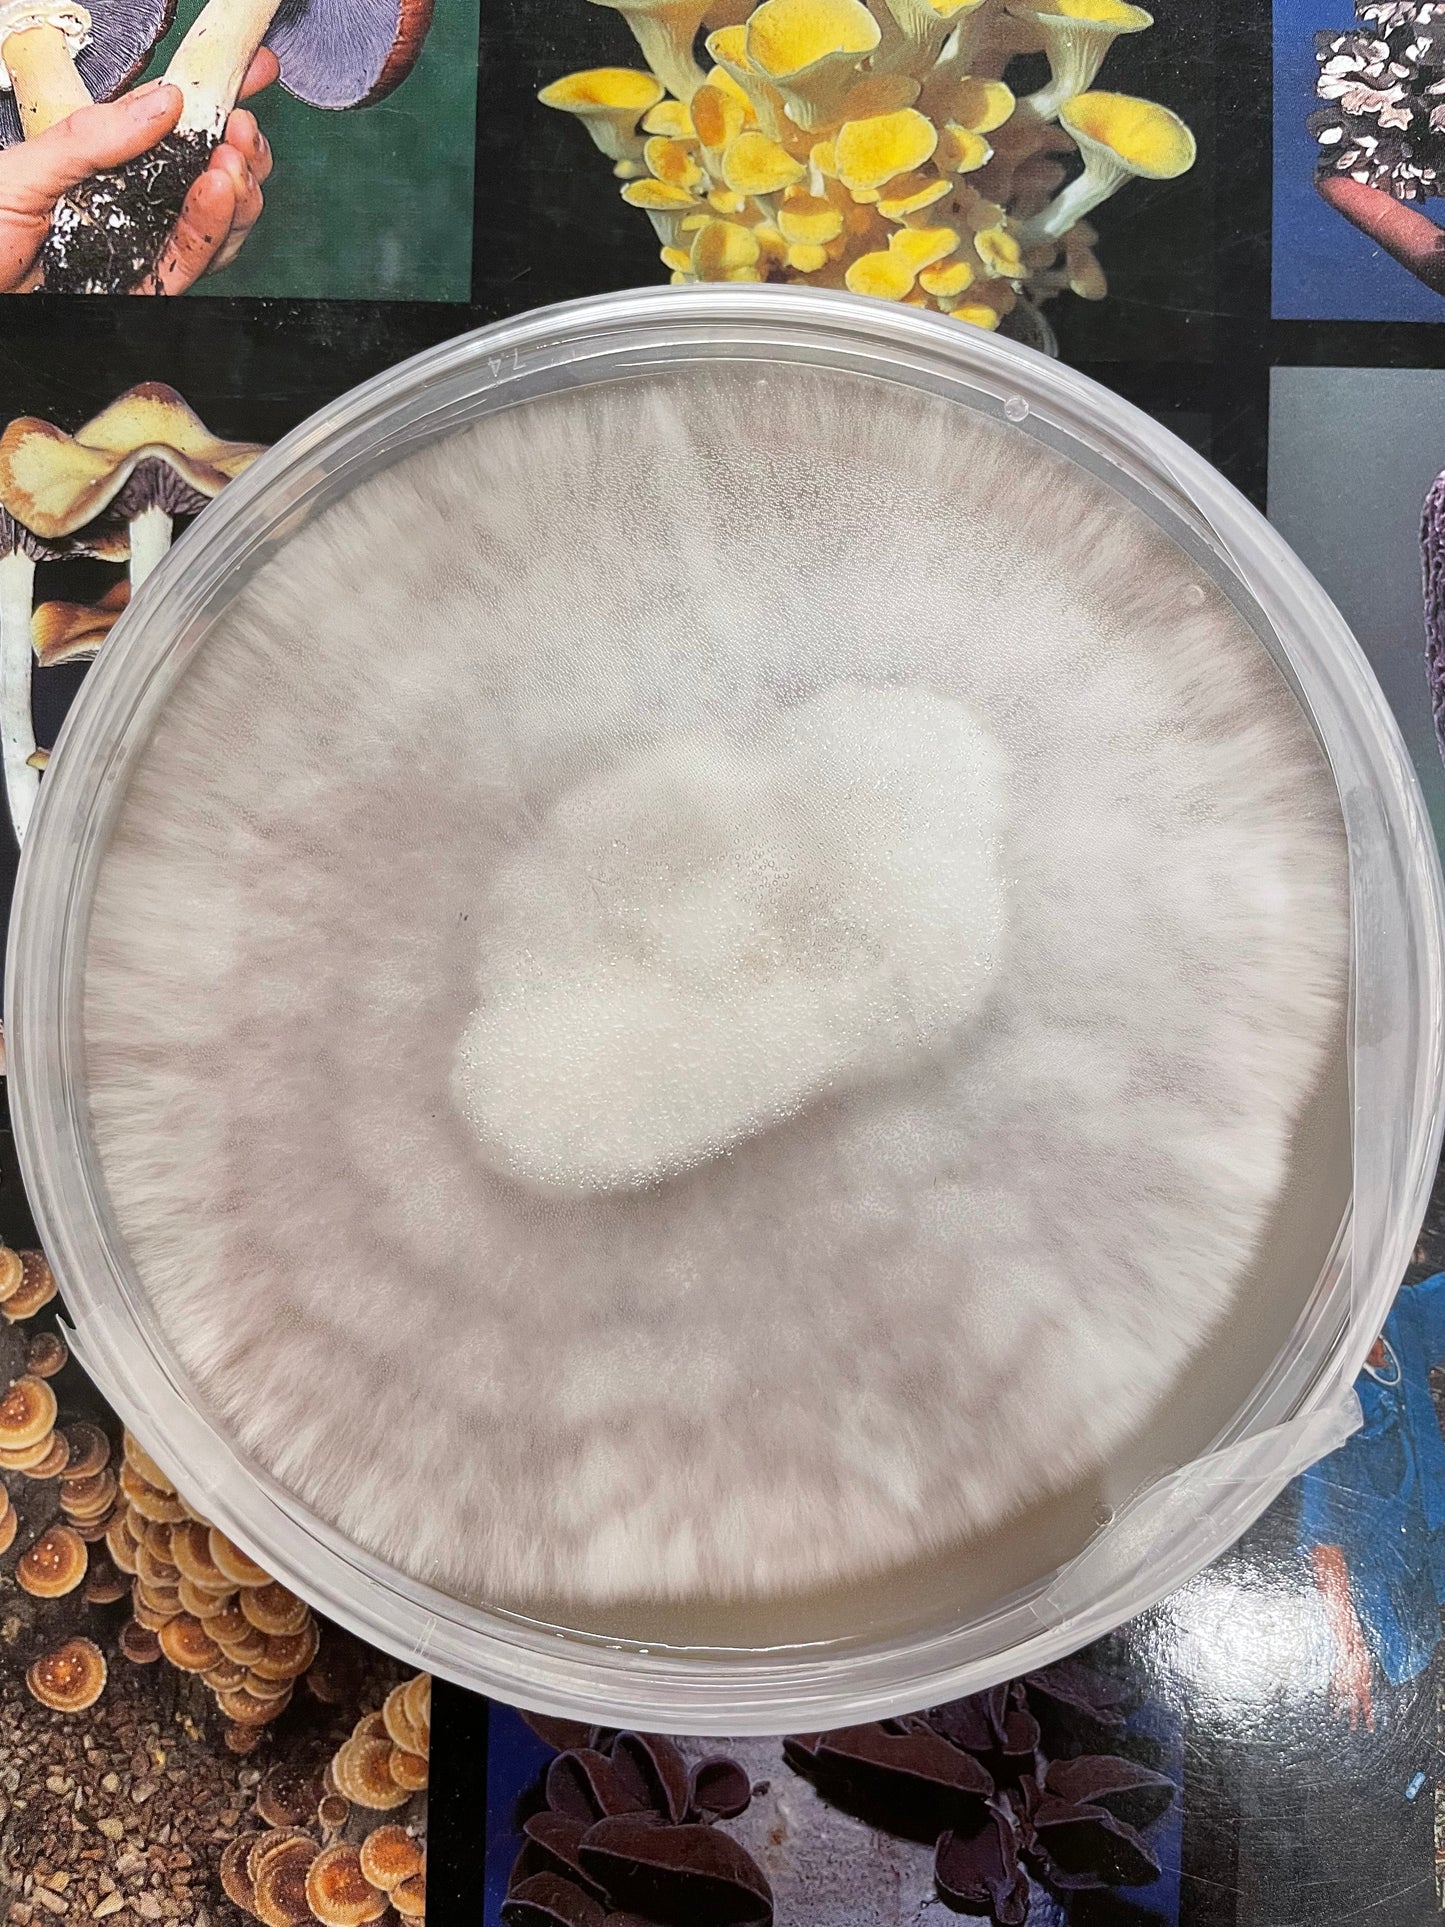 Oyster Mushroom Petri dish Culture